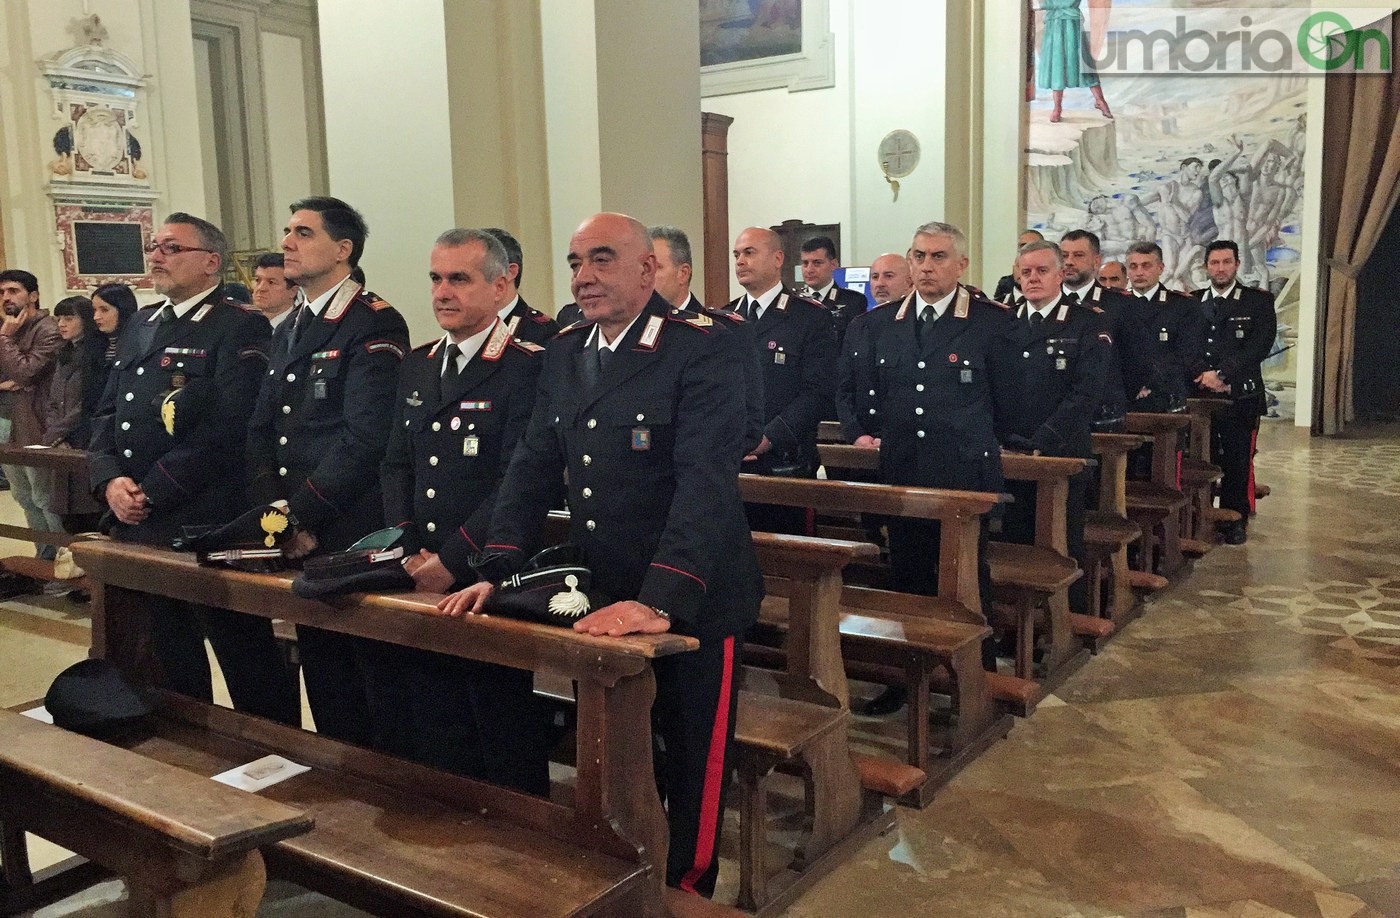 Virgo-Fidelis-carabinieri-Terni-in-cattedrale-21-novembre-2016-4